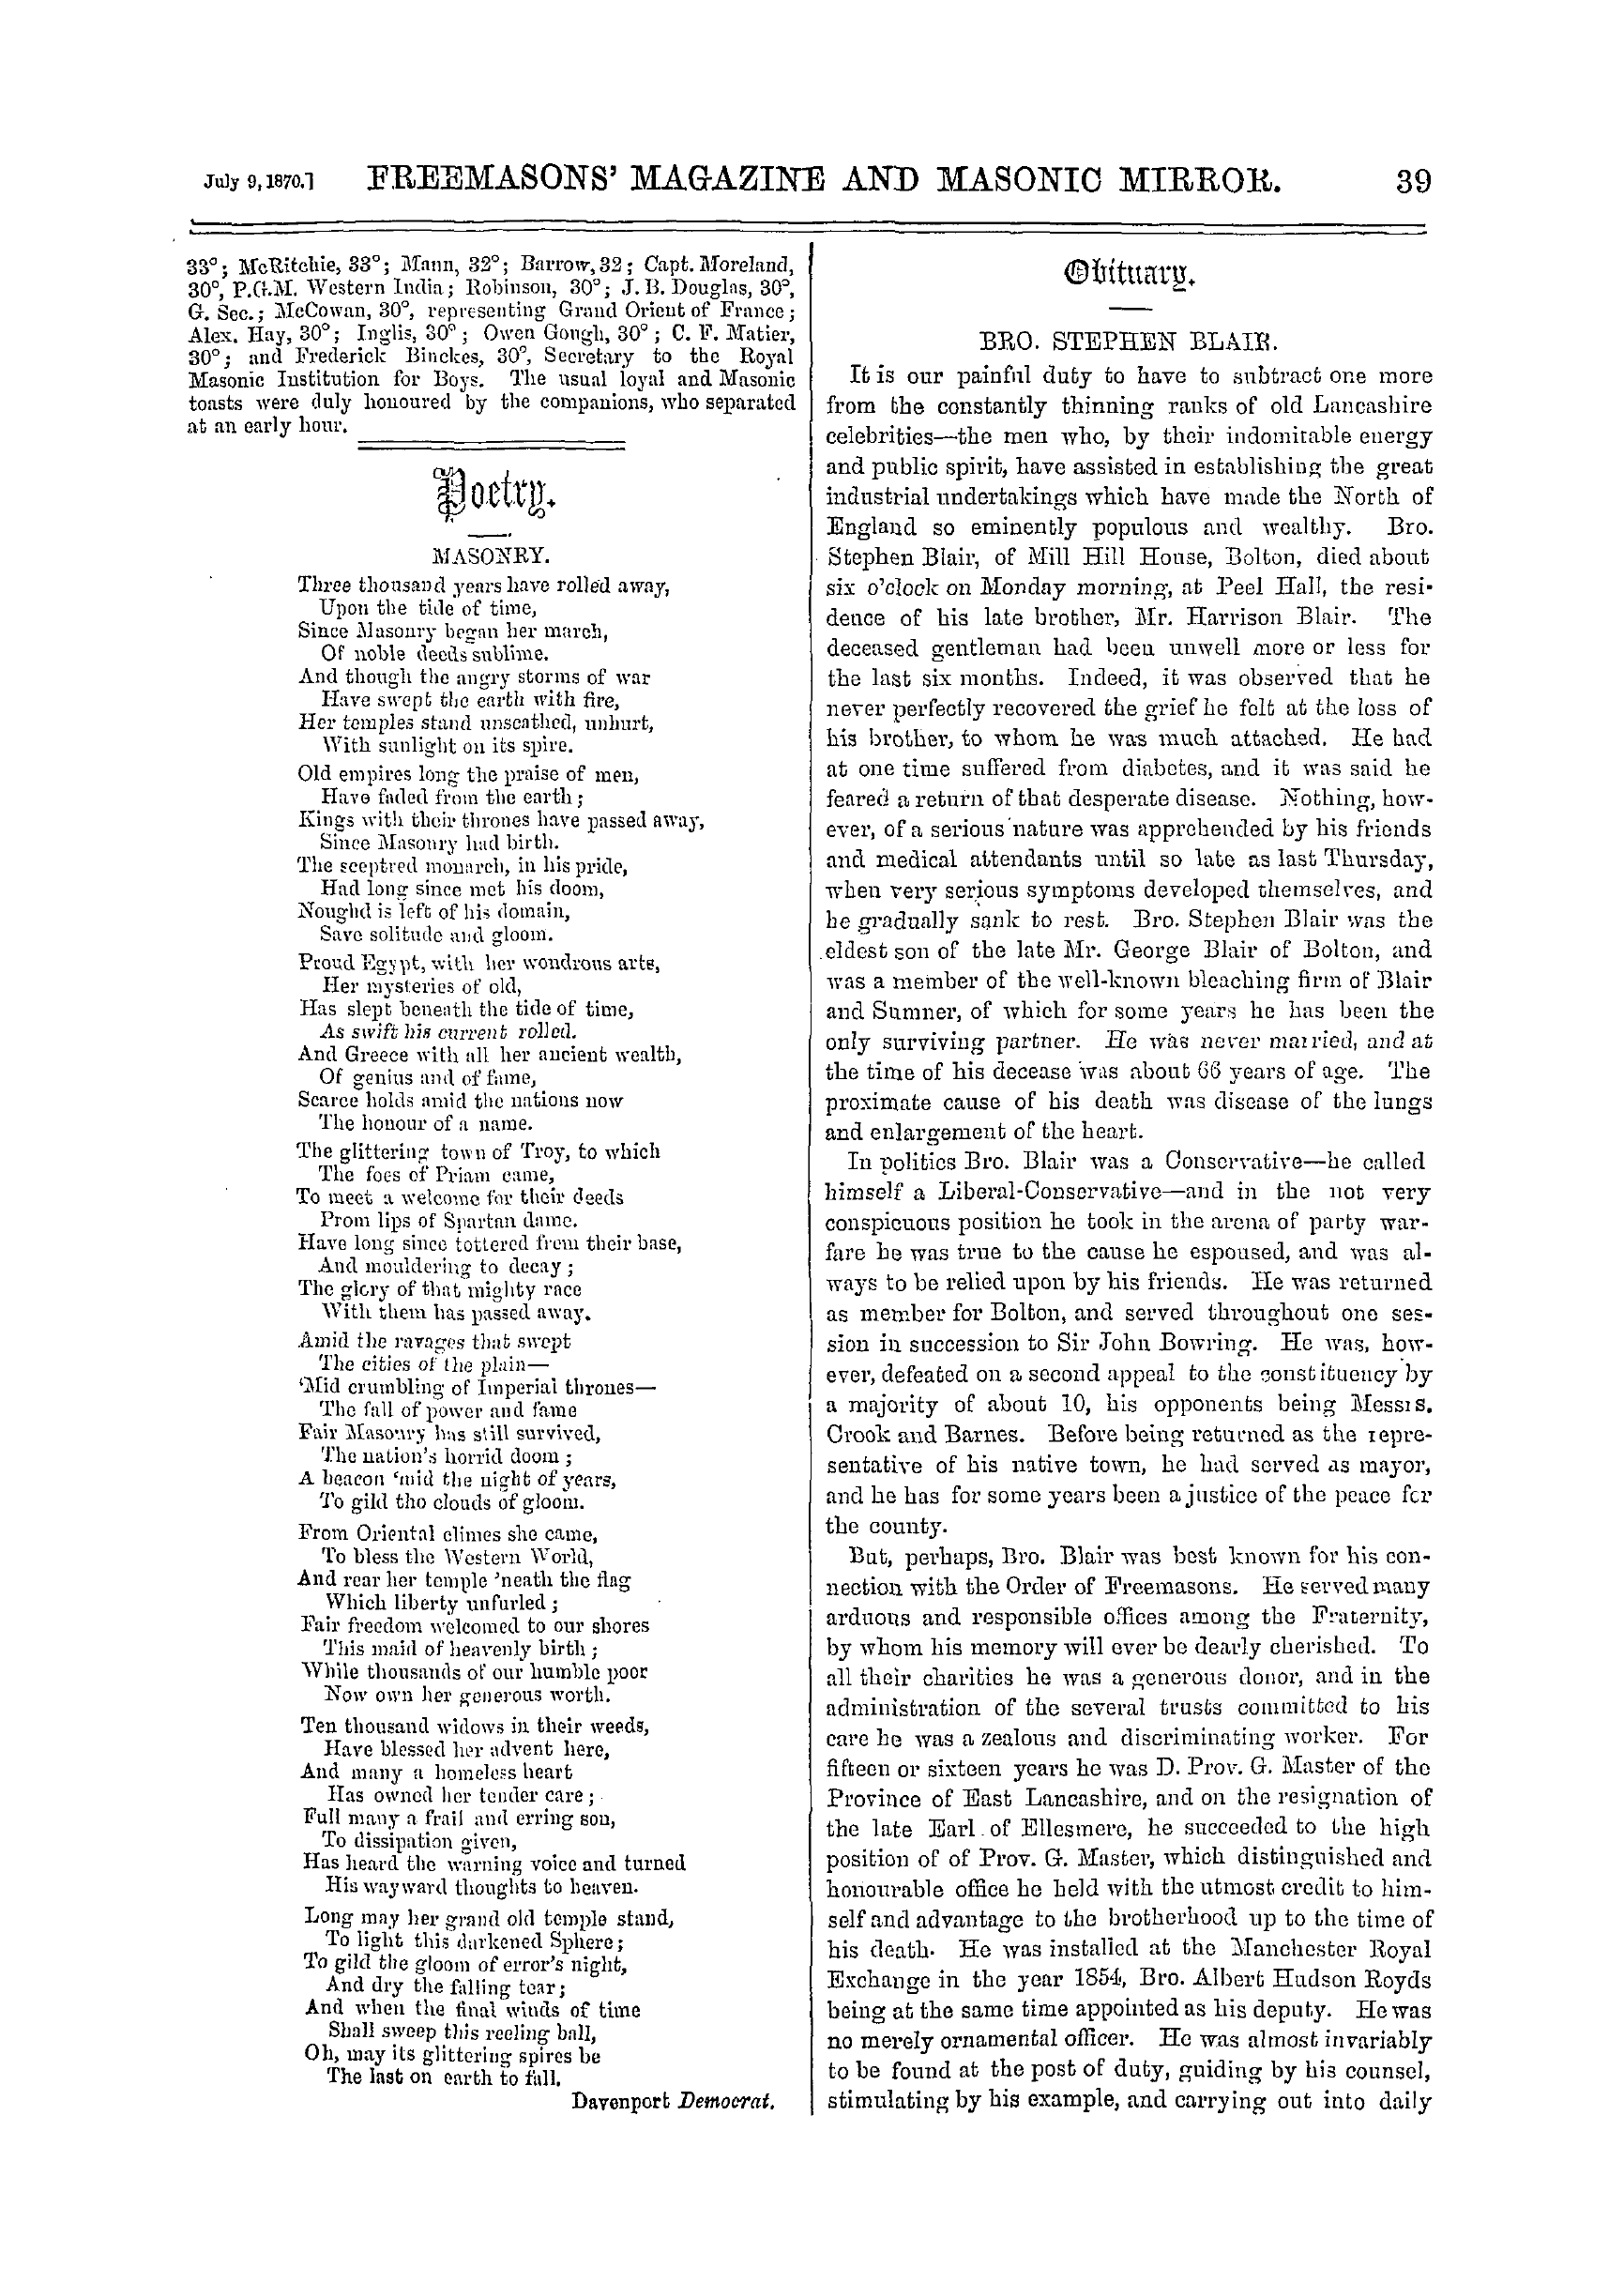 The Freemasons' Monthly Magazine: 1870-07-09 - Obituary.